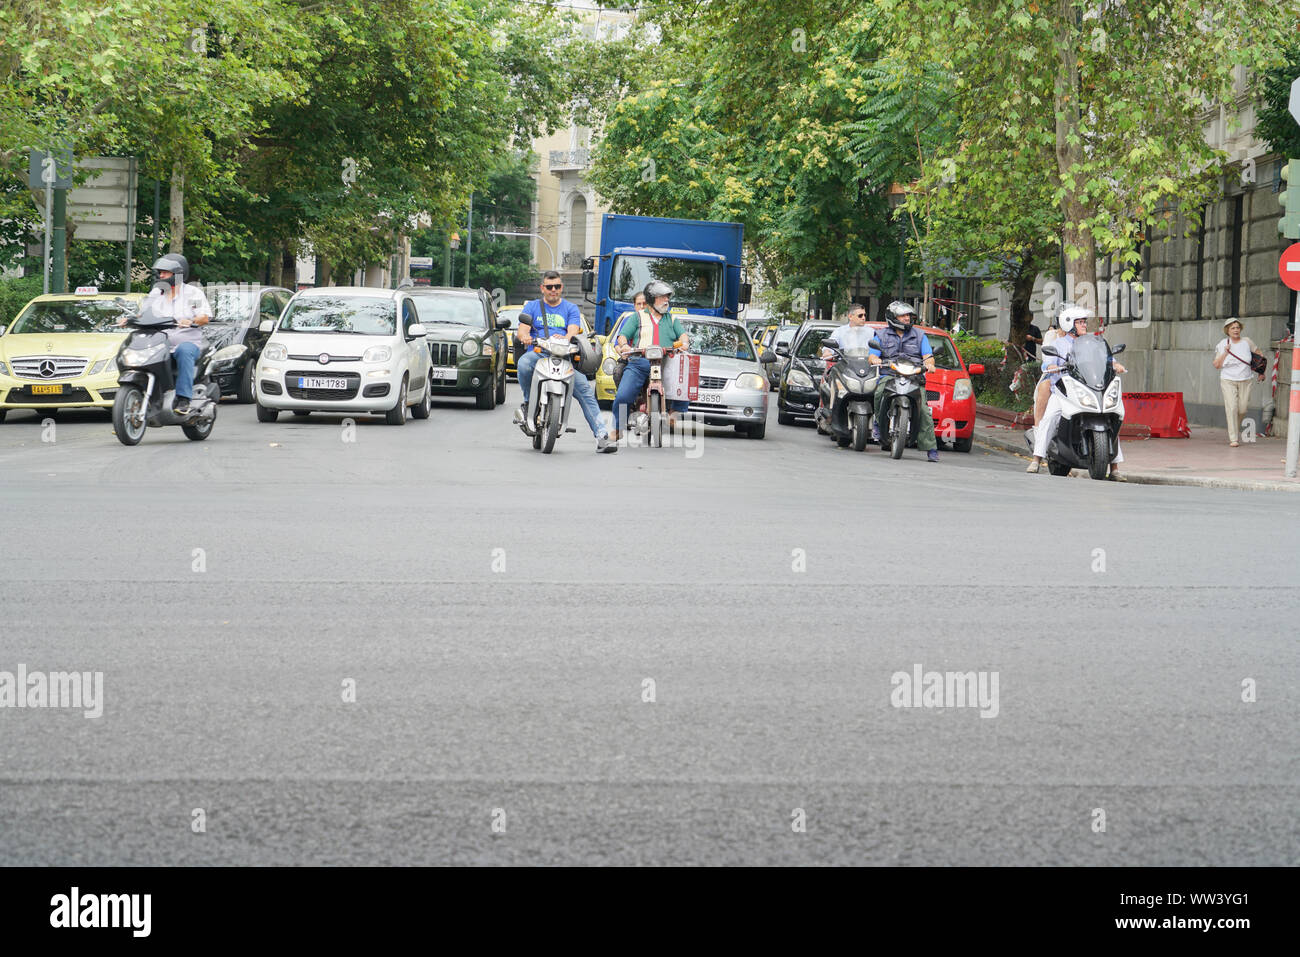 Athen Griechenland - 15. JULI 2019; Fahrzeuge an der Kreuzung warten zu bewegen, wenn es sicher ist. Stockfoto